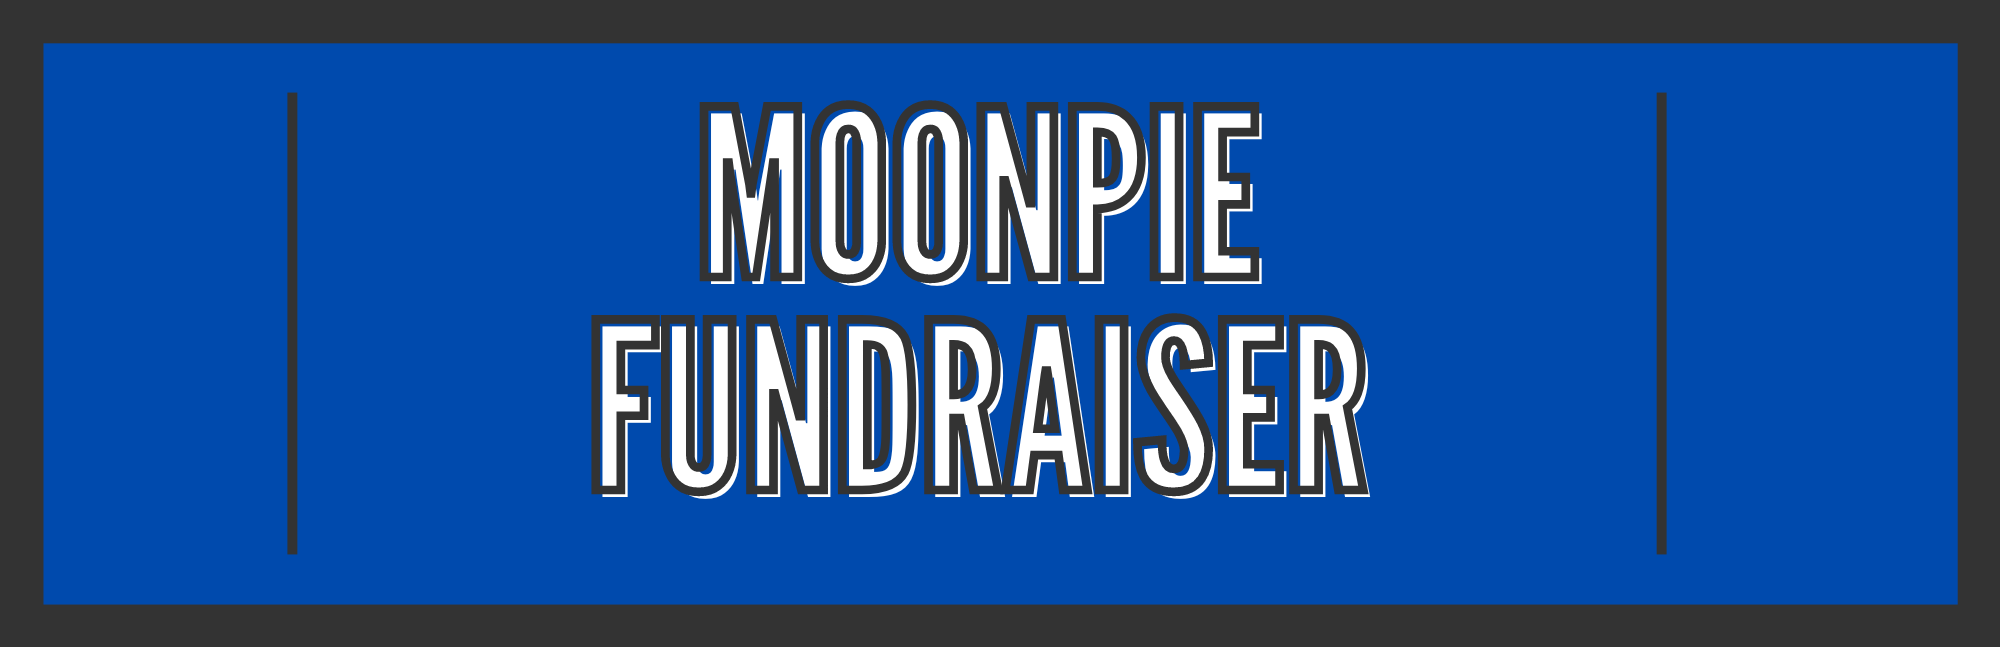 MoonPie Fundraiser info button